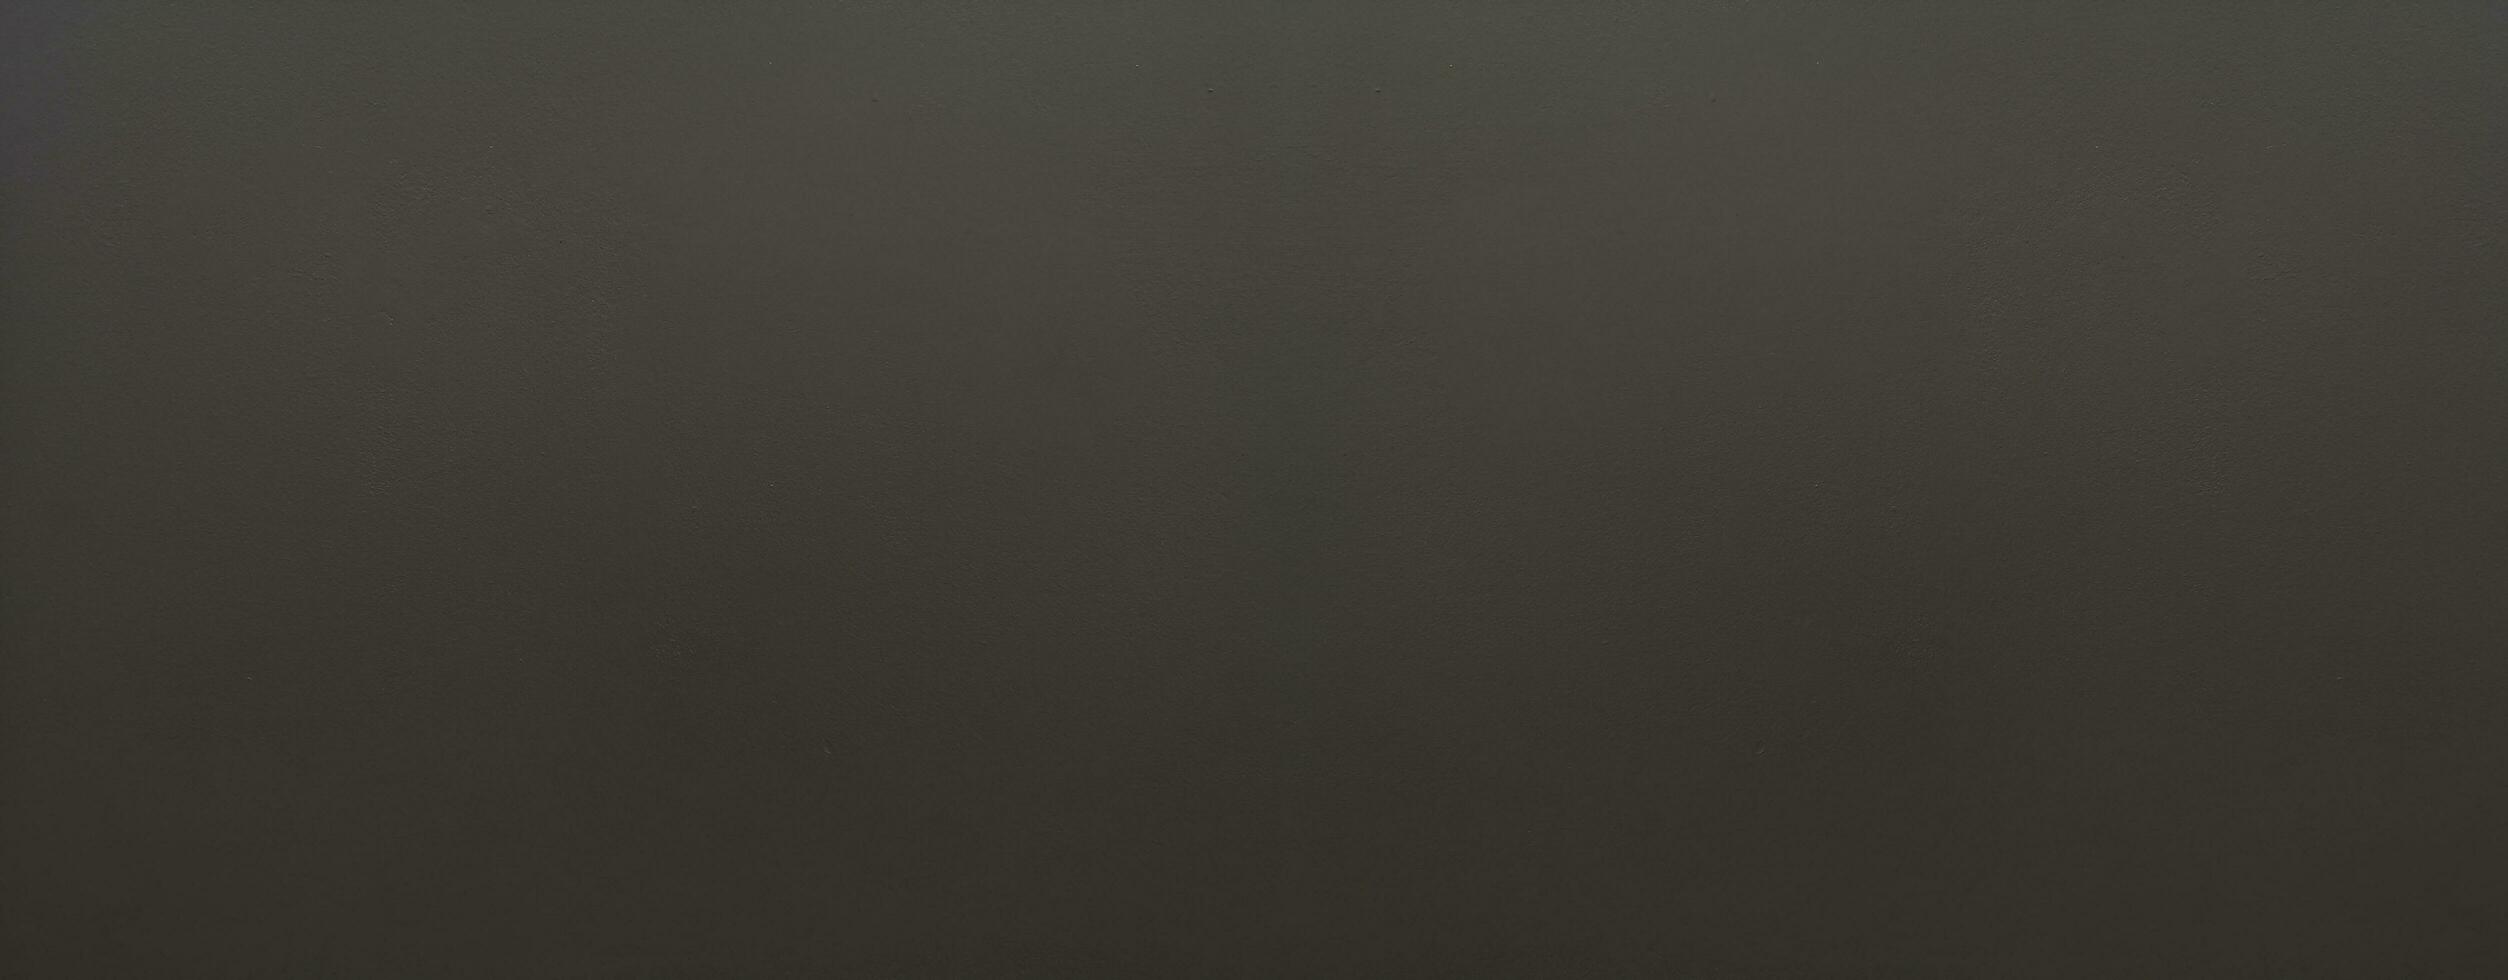 schwarze farbe auf der zementwand hat graue farbe und glatten abstrakten oberflächentextur-betonmaterialhintergrund foto